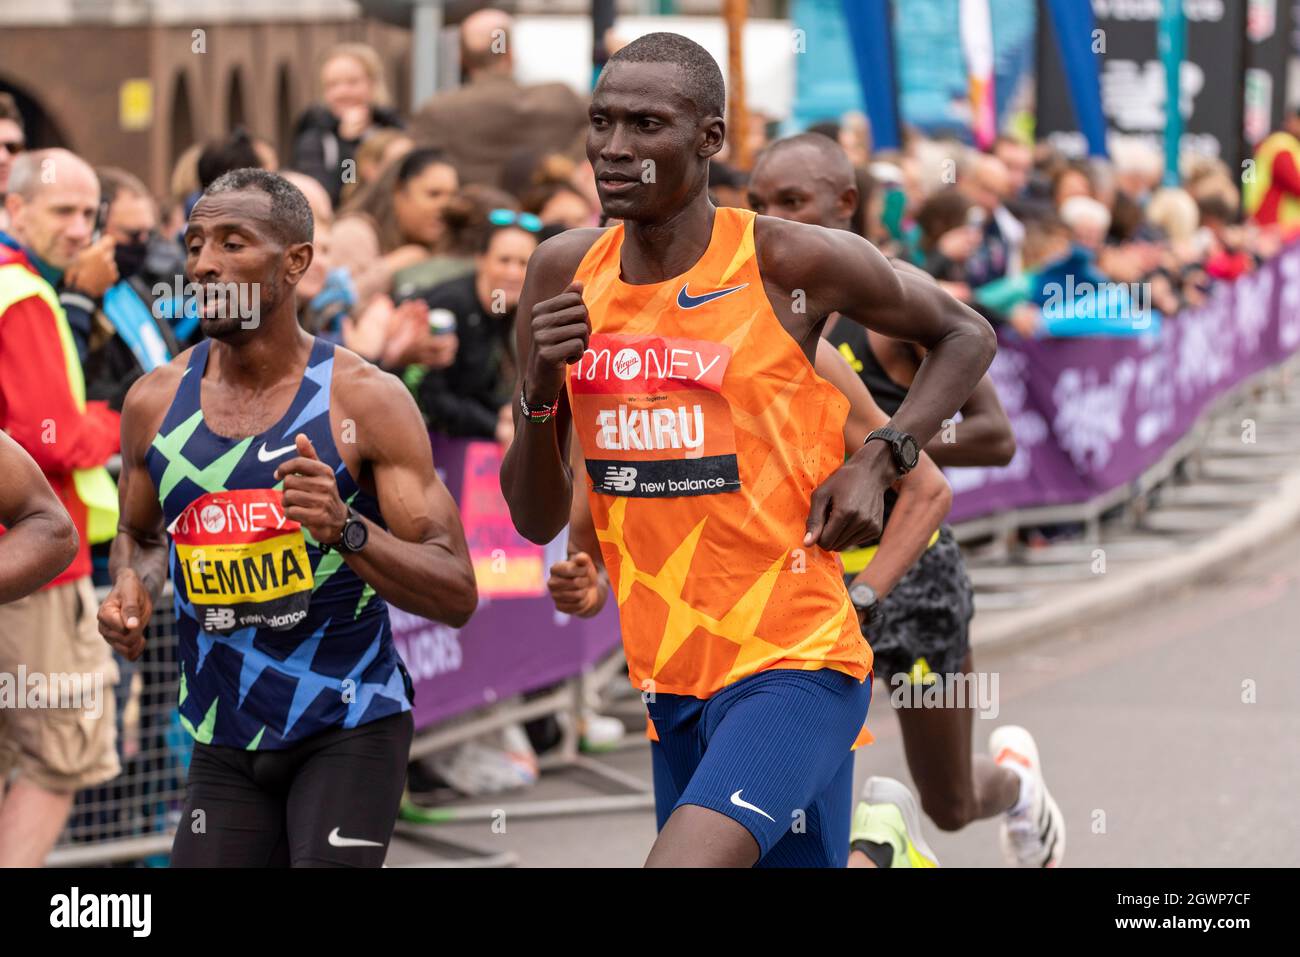 Sisay Lemma et Titus Ekiru en course au marathon de Londres Virgin Money 2021, dans le groupe d'élite masculin Banque D'Images